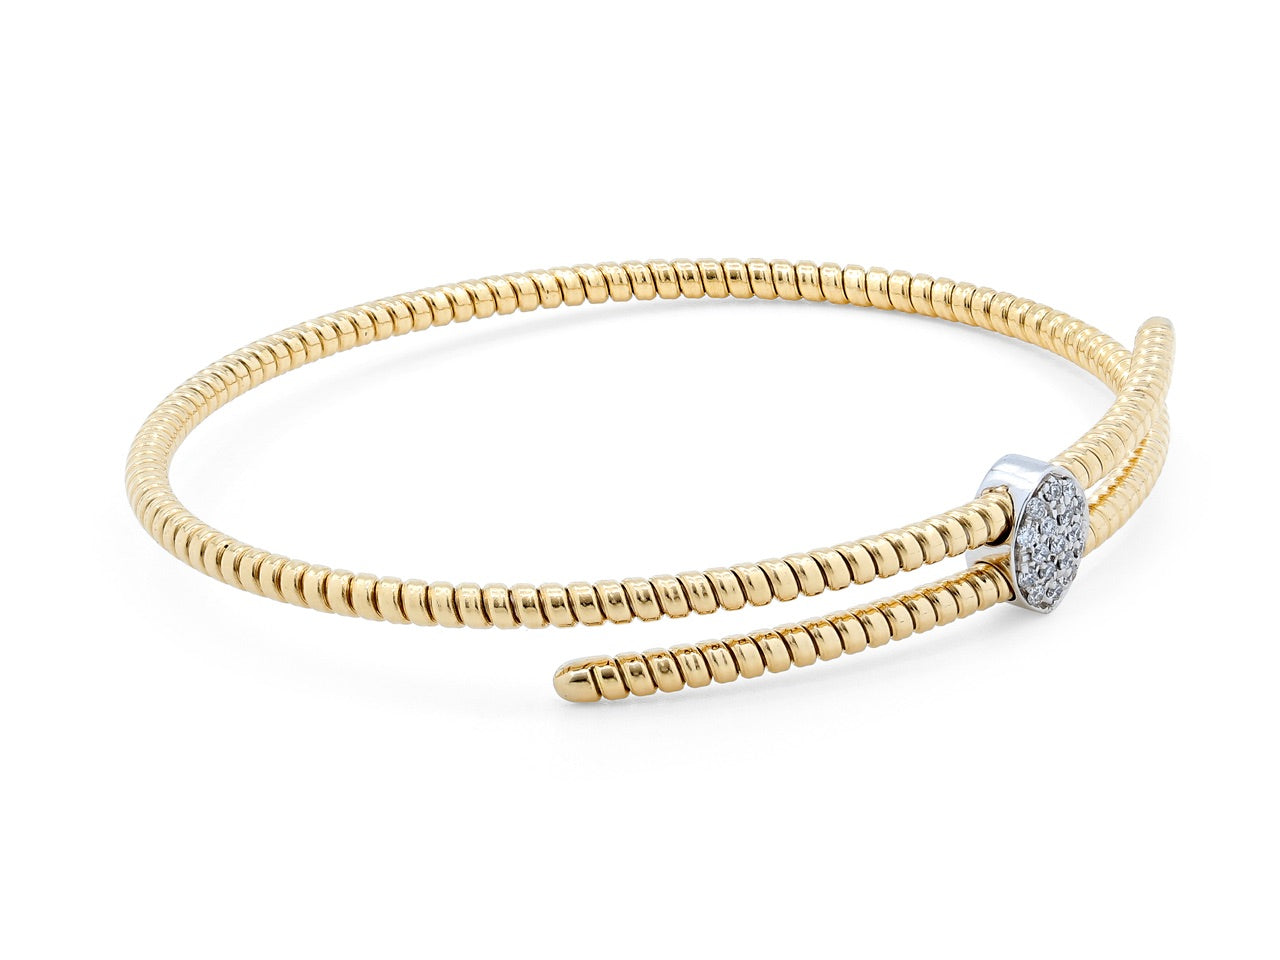 Tubogas Slide Bracelet in 18K Gold, by Beladora